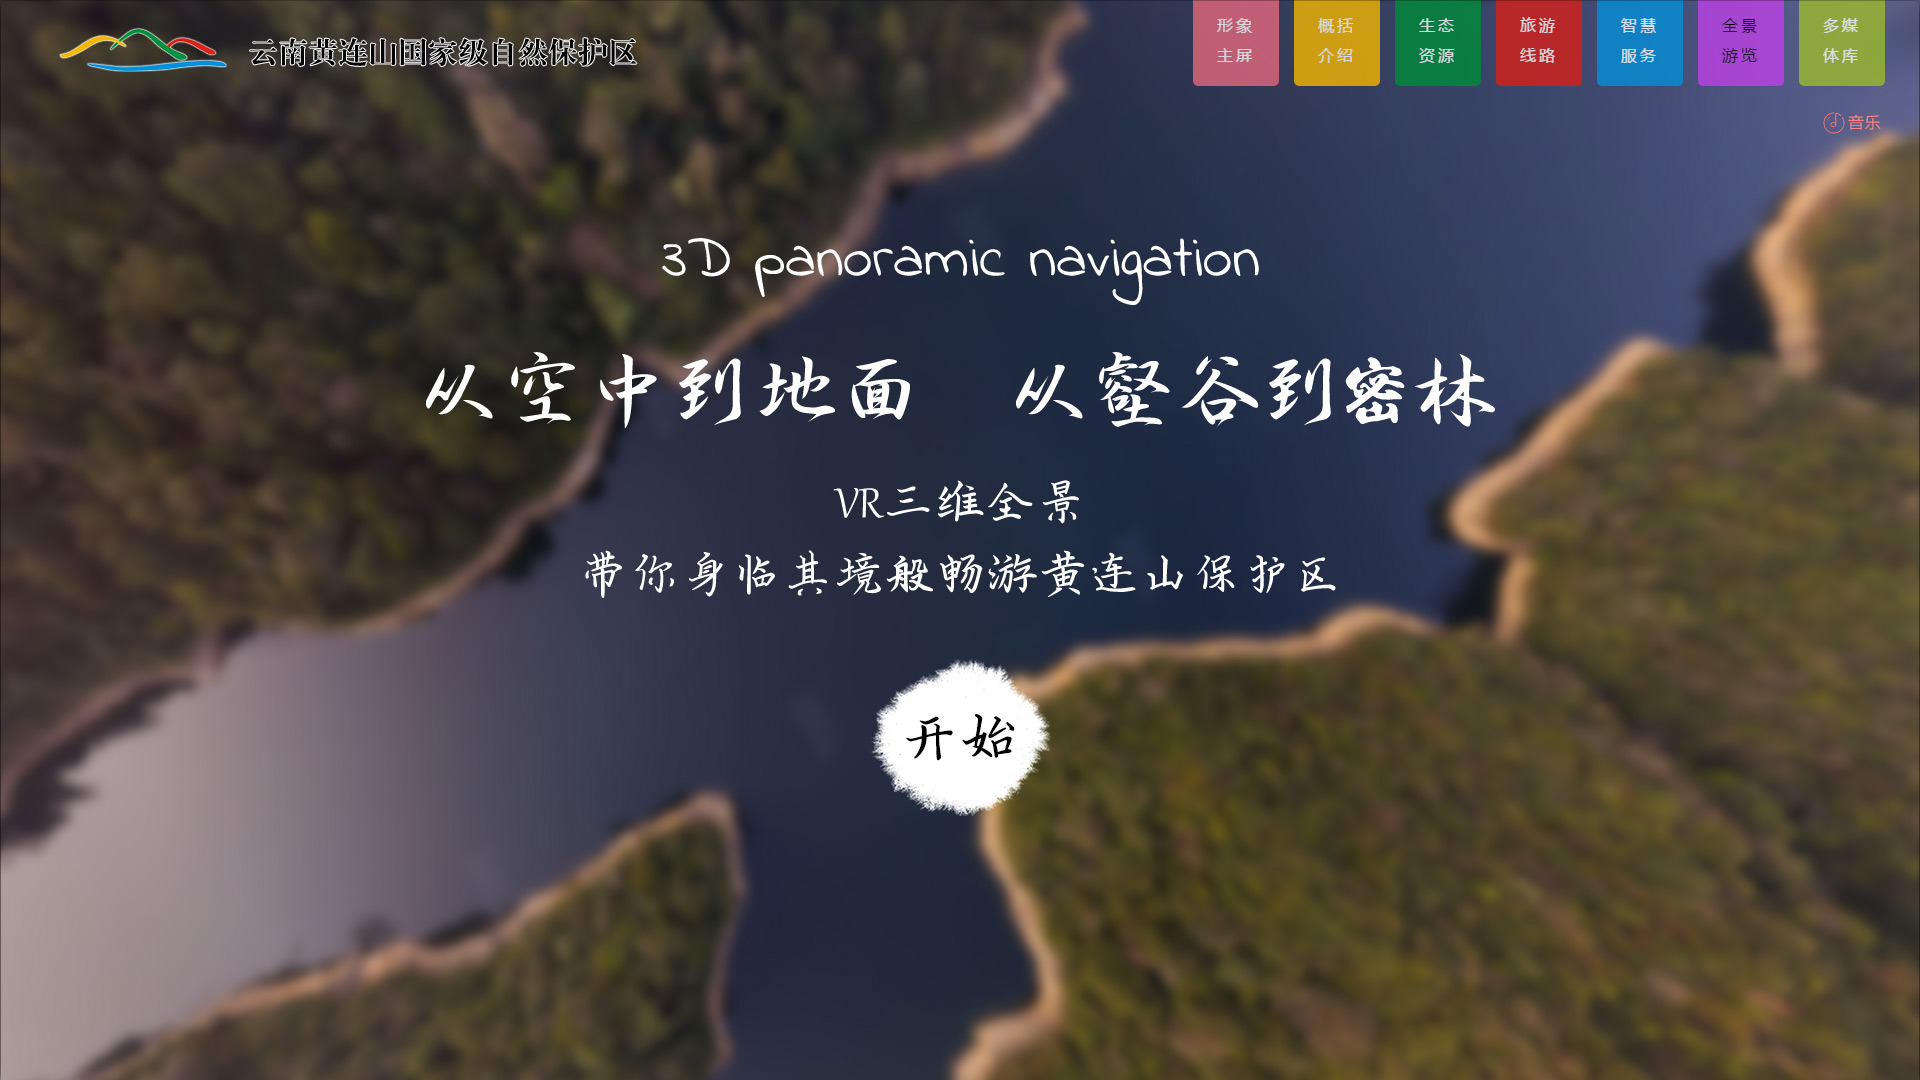 云南黄连山国家级自然保护区官网建设